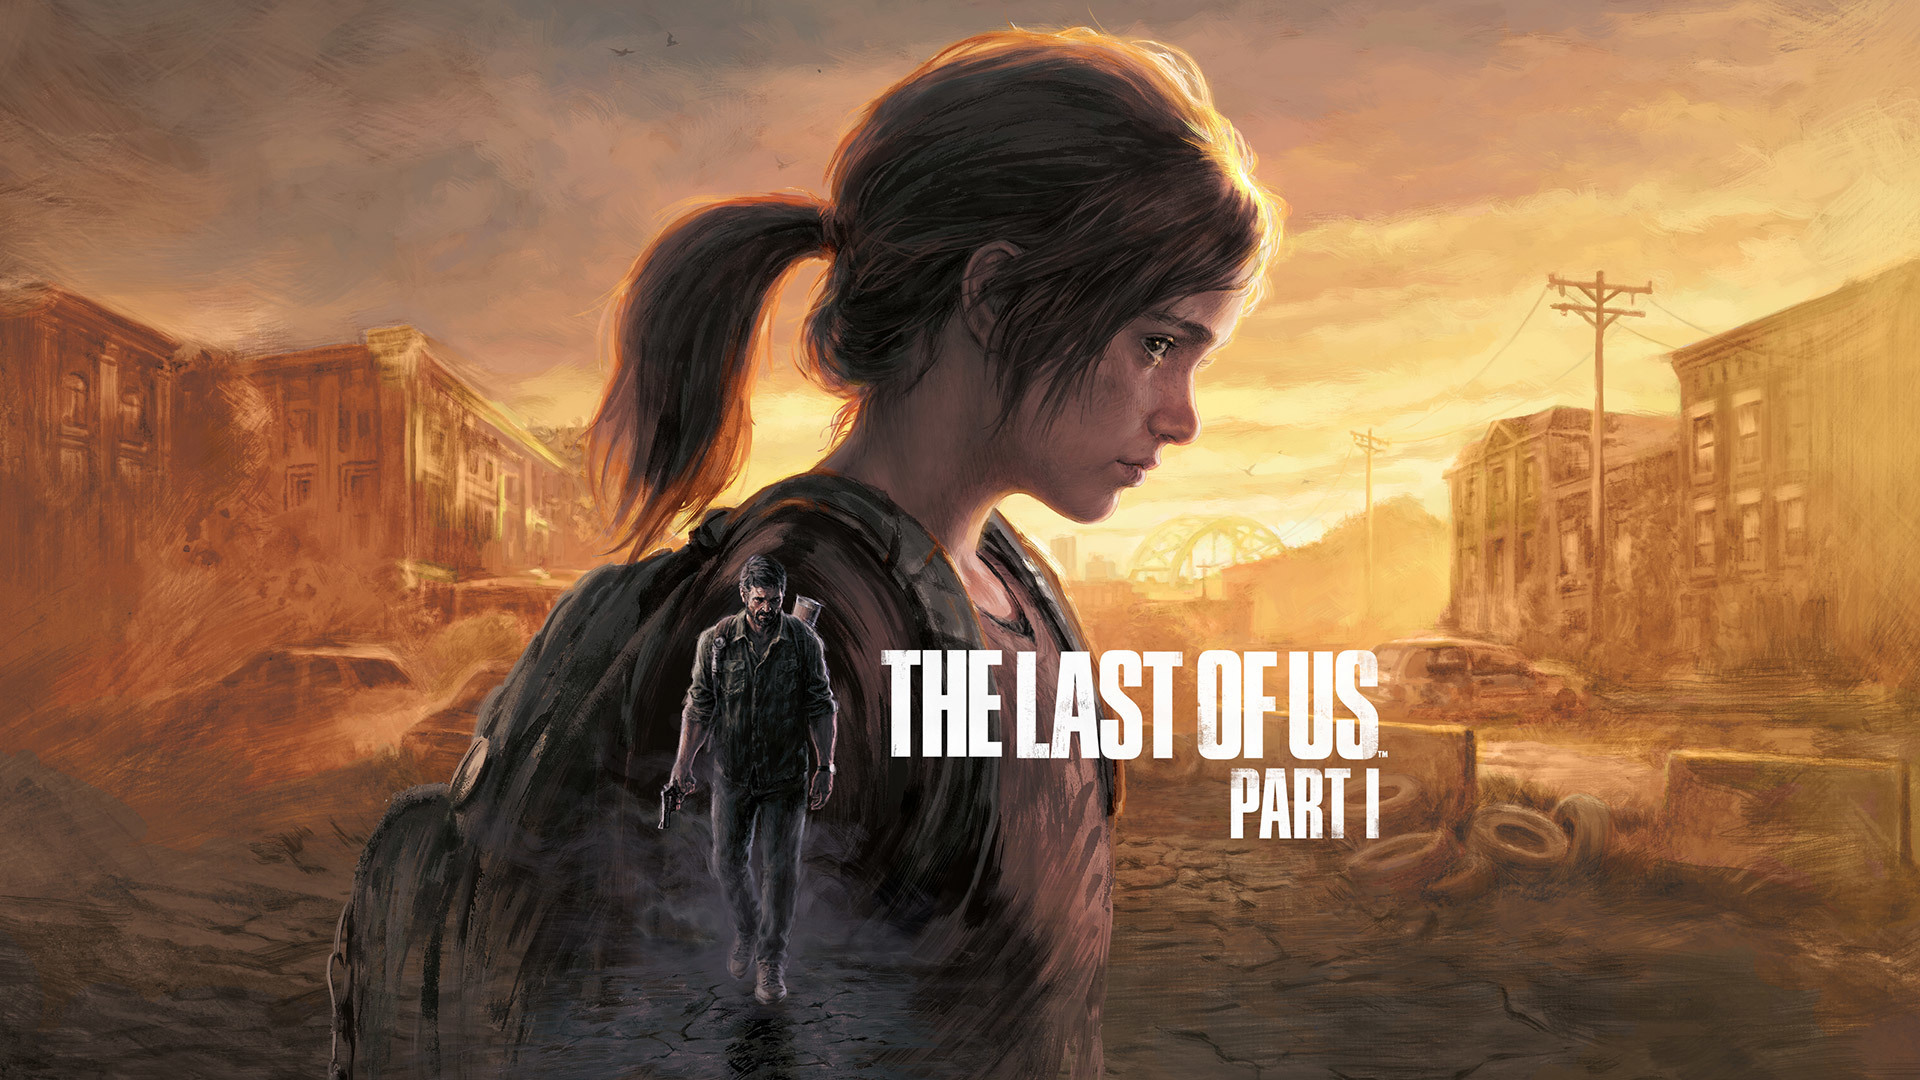 Immagine pubblicata in relazione al seguente contenuto: Naughty Dog: The Last of Us in arrivo prima su PlayStation 5 e poi su PC | Nome immagine: news33371_The-Last-of-Us-Part-I_1.jpg